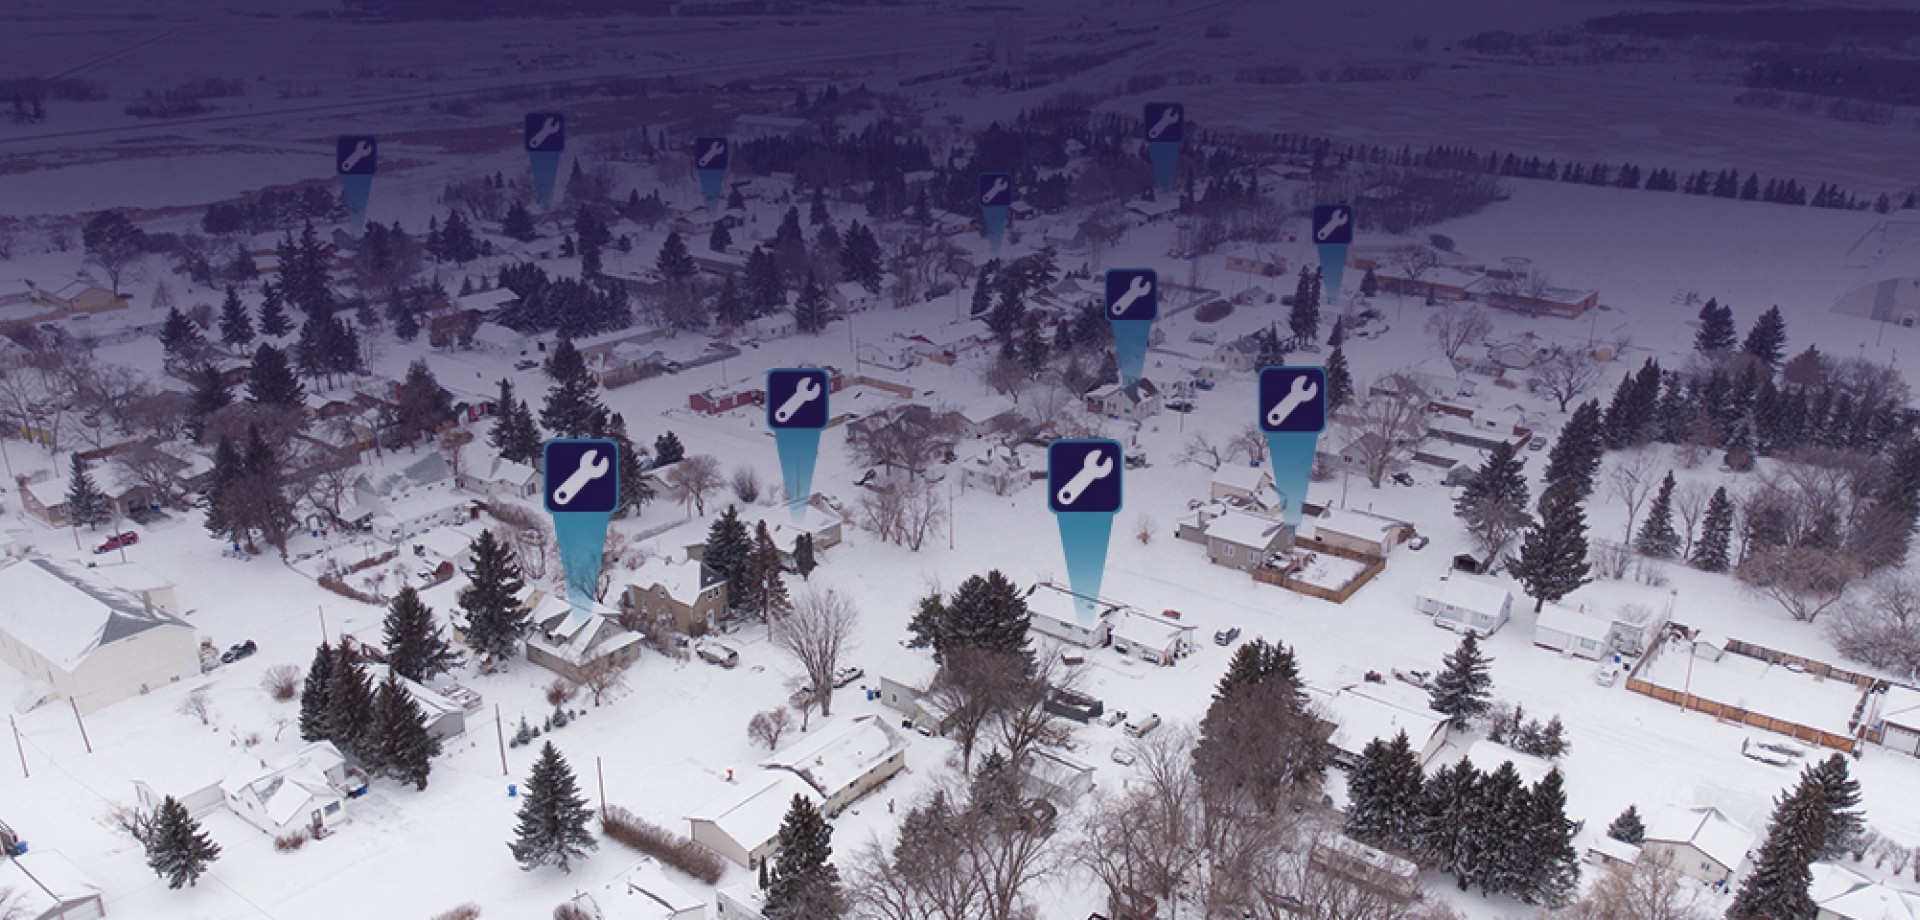 Aerial view of a prairie town